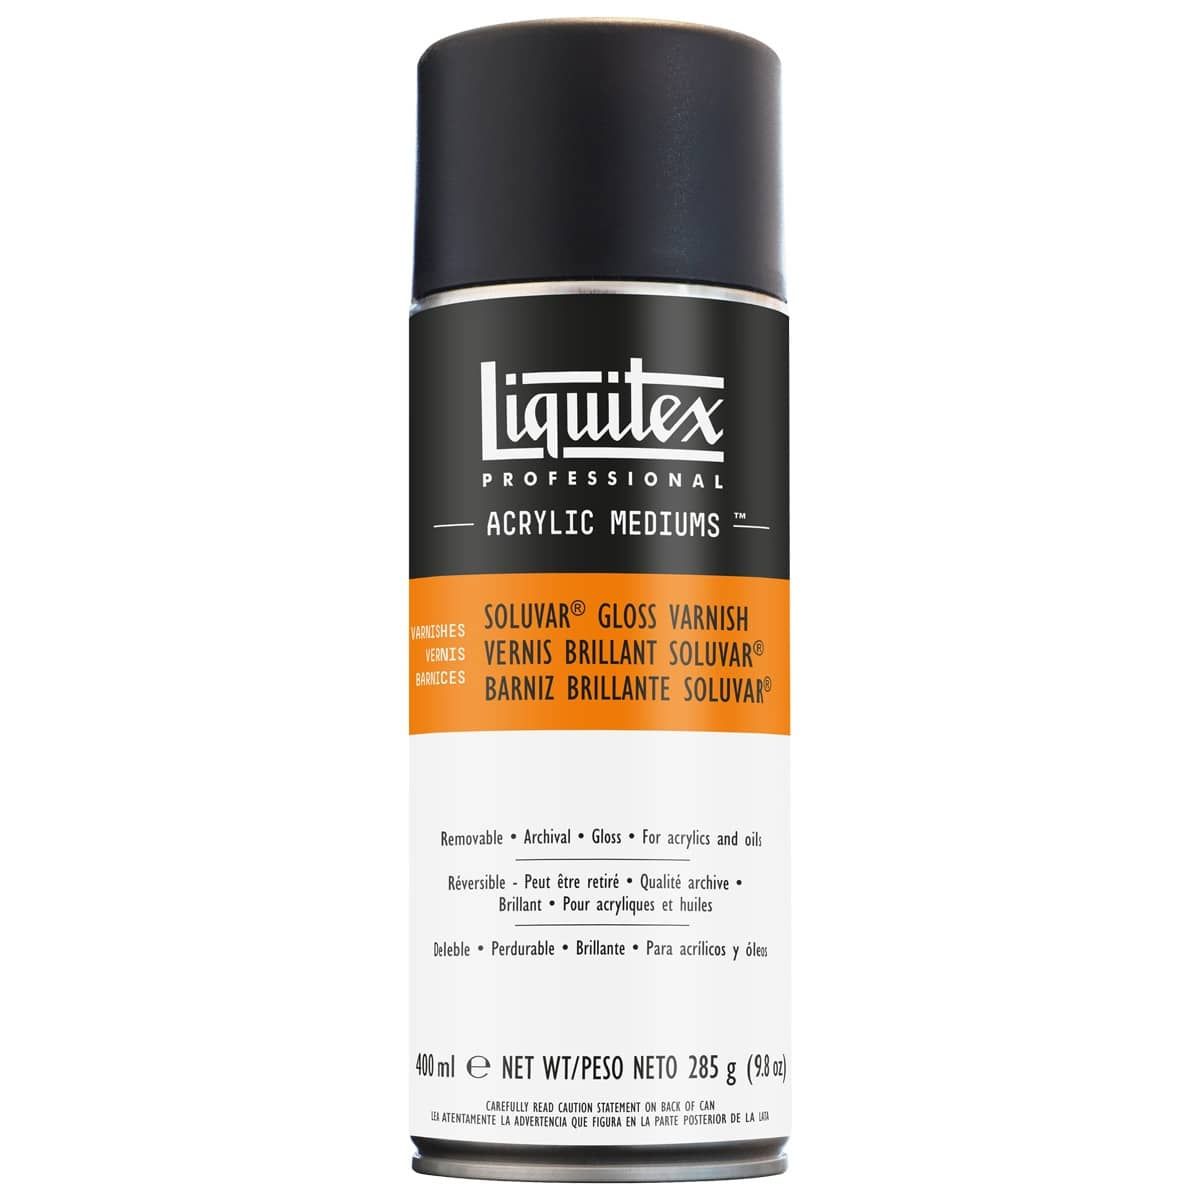 Liquitex Acrylic Finishing Varnishes - Soluvar Gloss Varnish Spray, 400ml